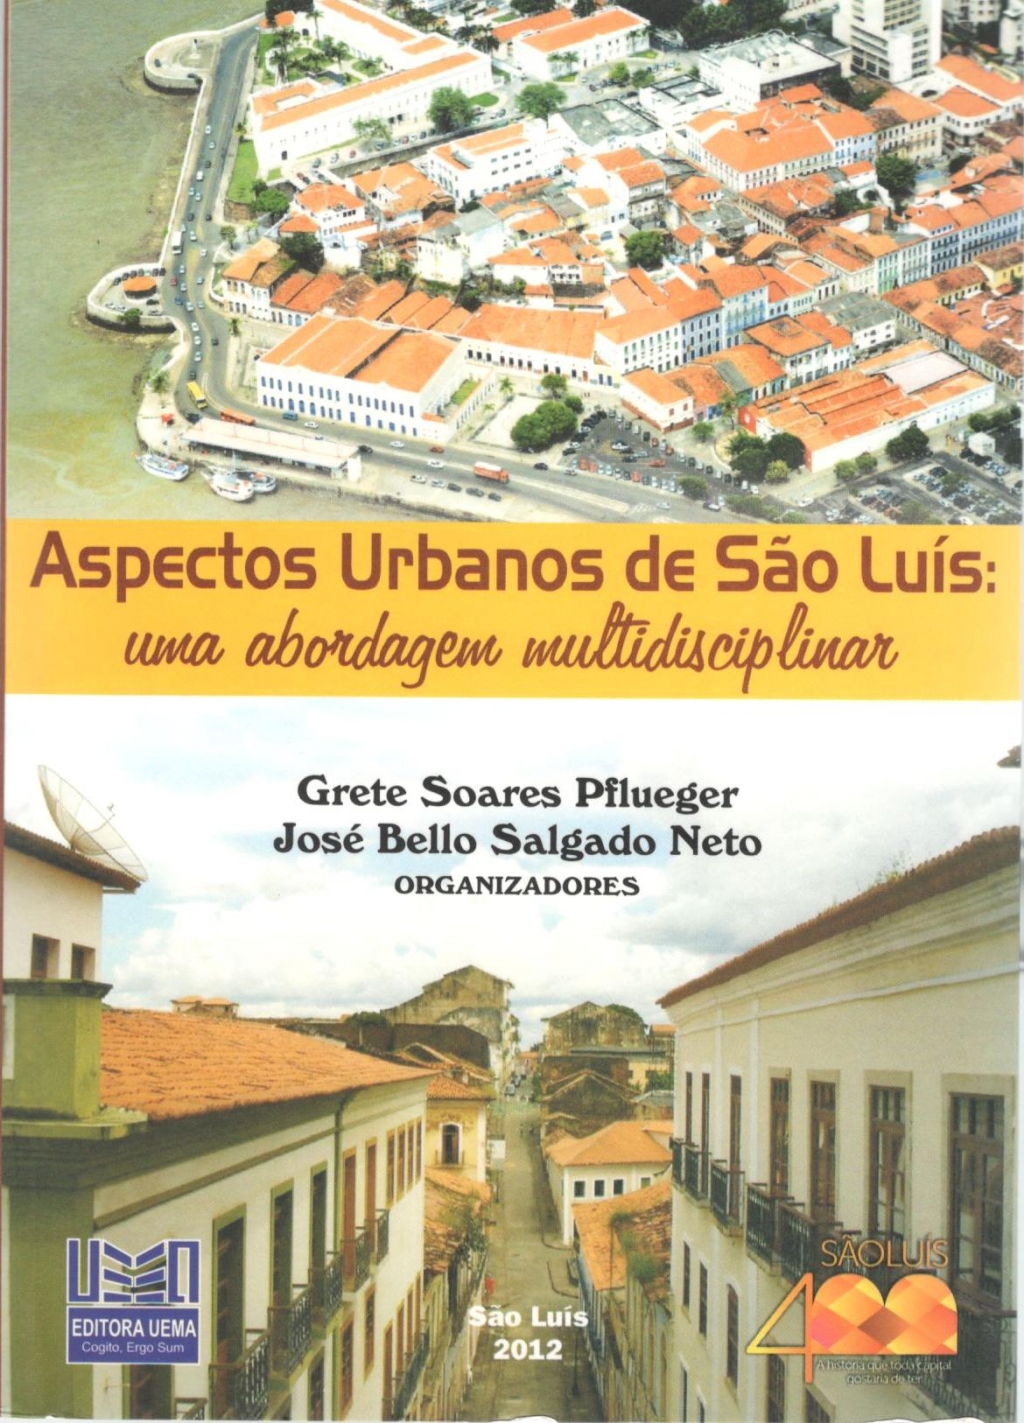 Coleção 400 Anos - Aspectos urbanos de São Luís:  uma abordagem multidisciplinar